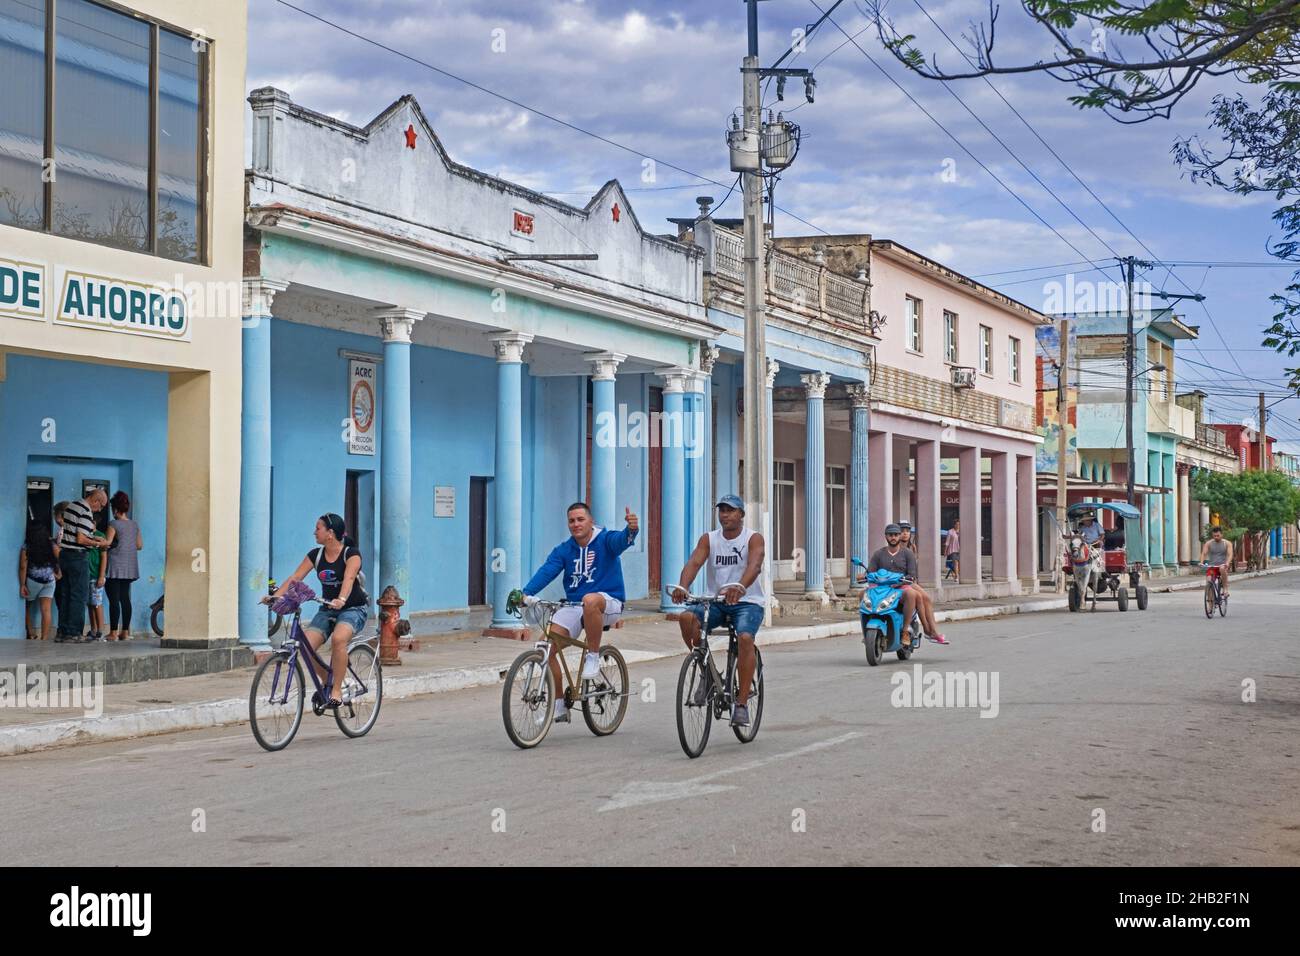 Kubaner fahren mit dem Fahrrad durch die Straße mit bunten Gebäuden in der Stadt Ciego de Ávila auf der Insel Kuba, Karibik Stockfoto